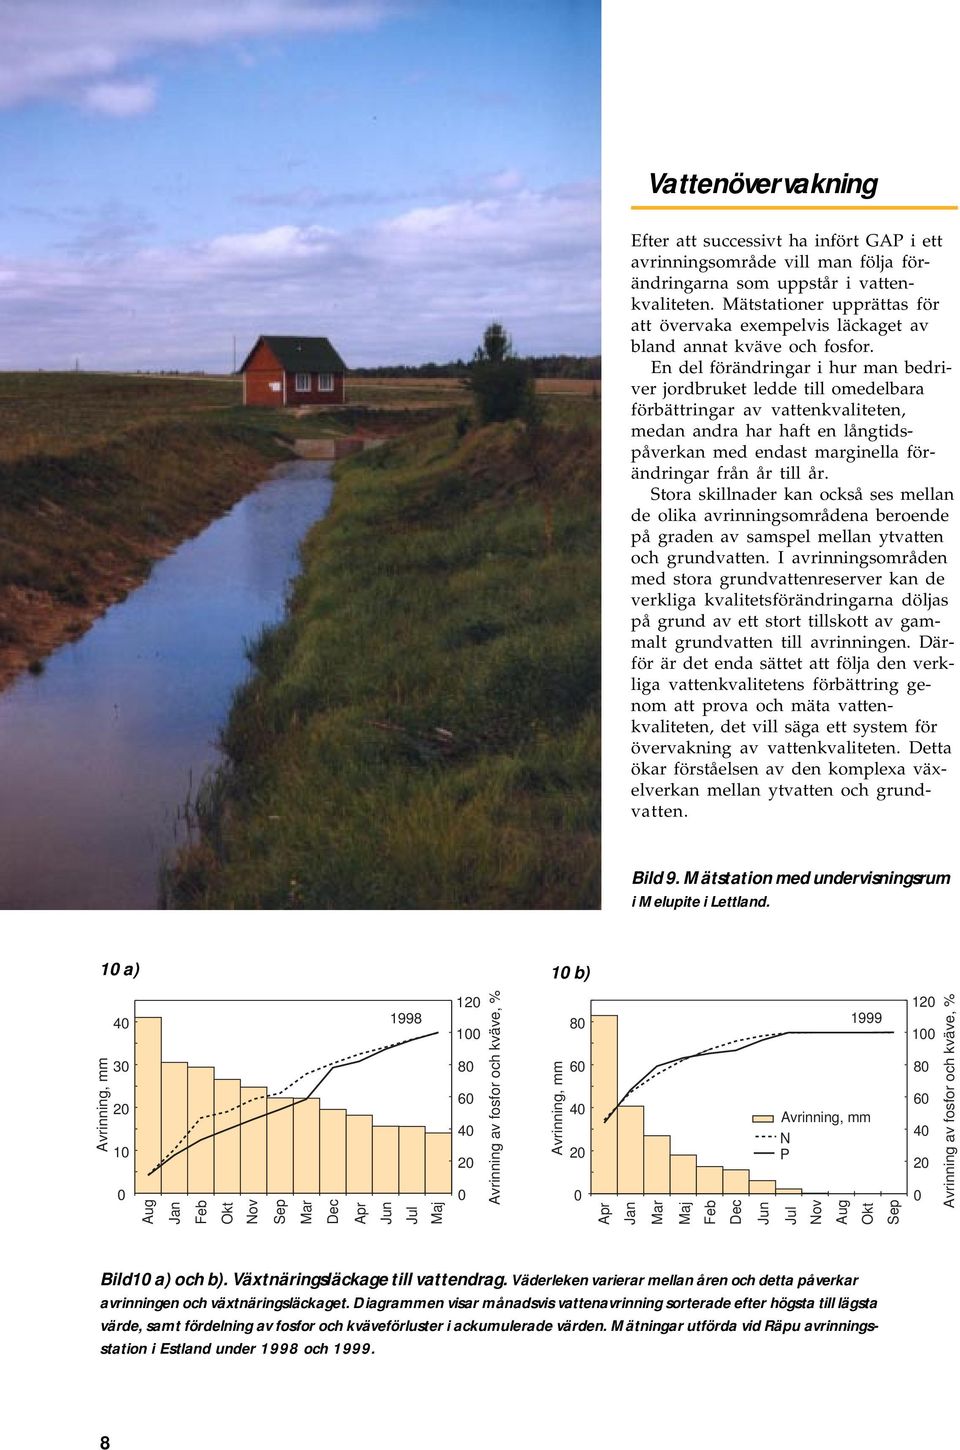 En del förändringar i hur man bedriver jordbruket ledde till omedelbara förbättringar av vattenkvaliteten, medan andra r ft en långtidspåverkan med endast marginella förändringar från år till år.